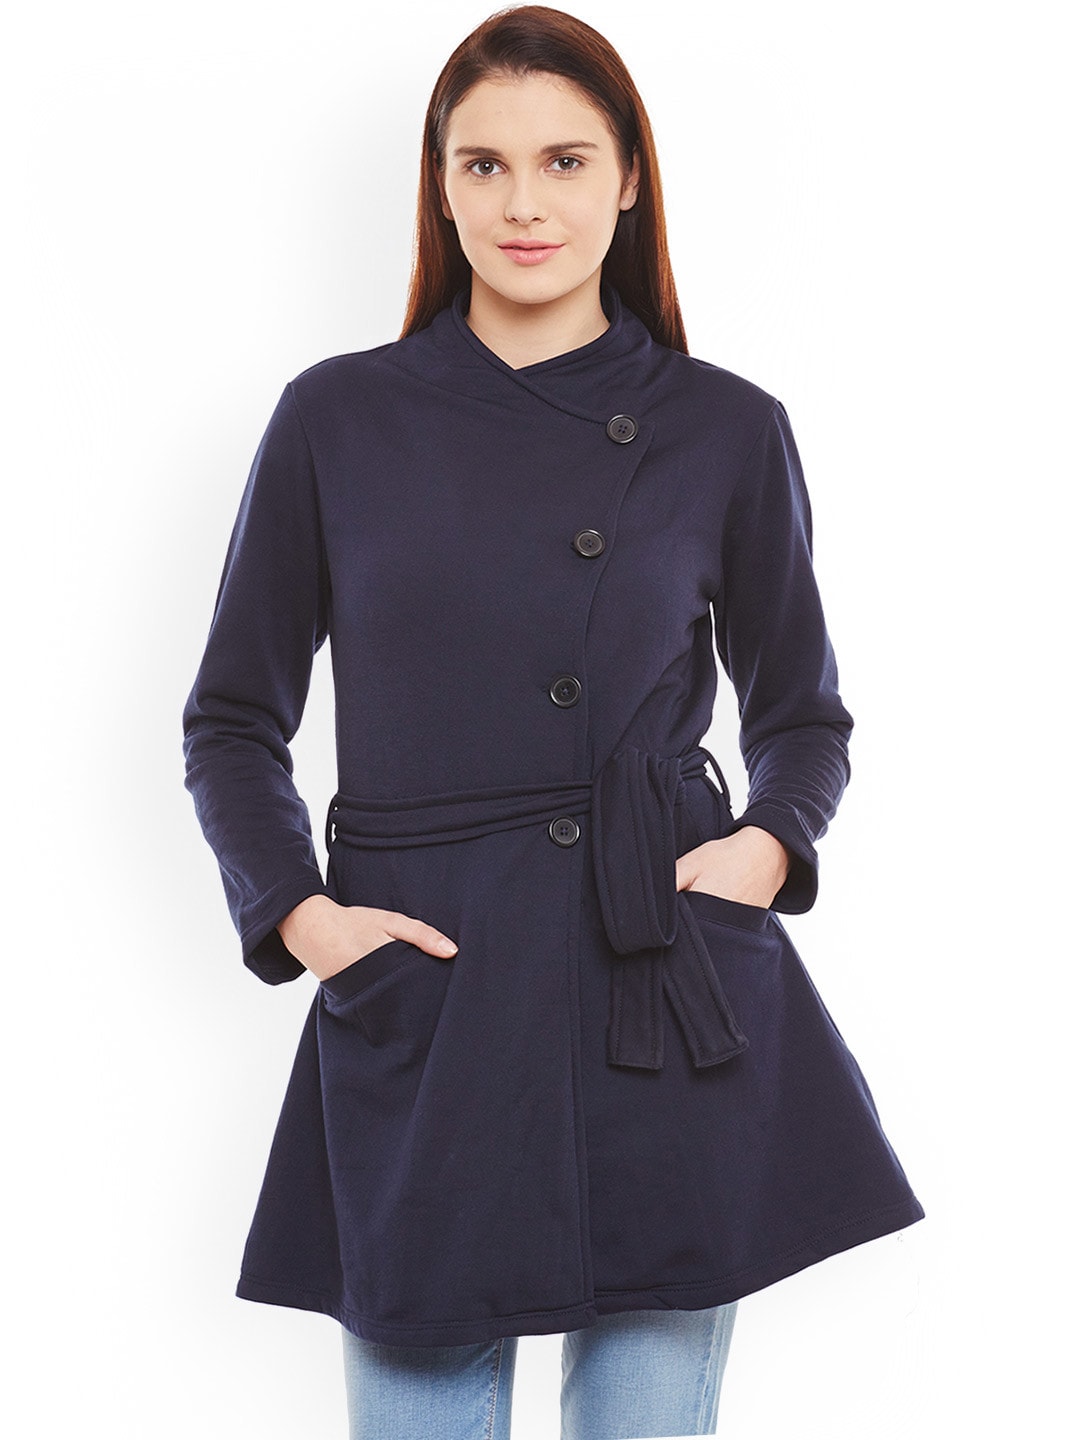 Navy Blue Overcoat